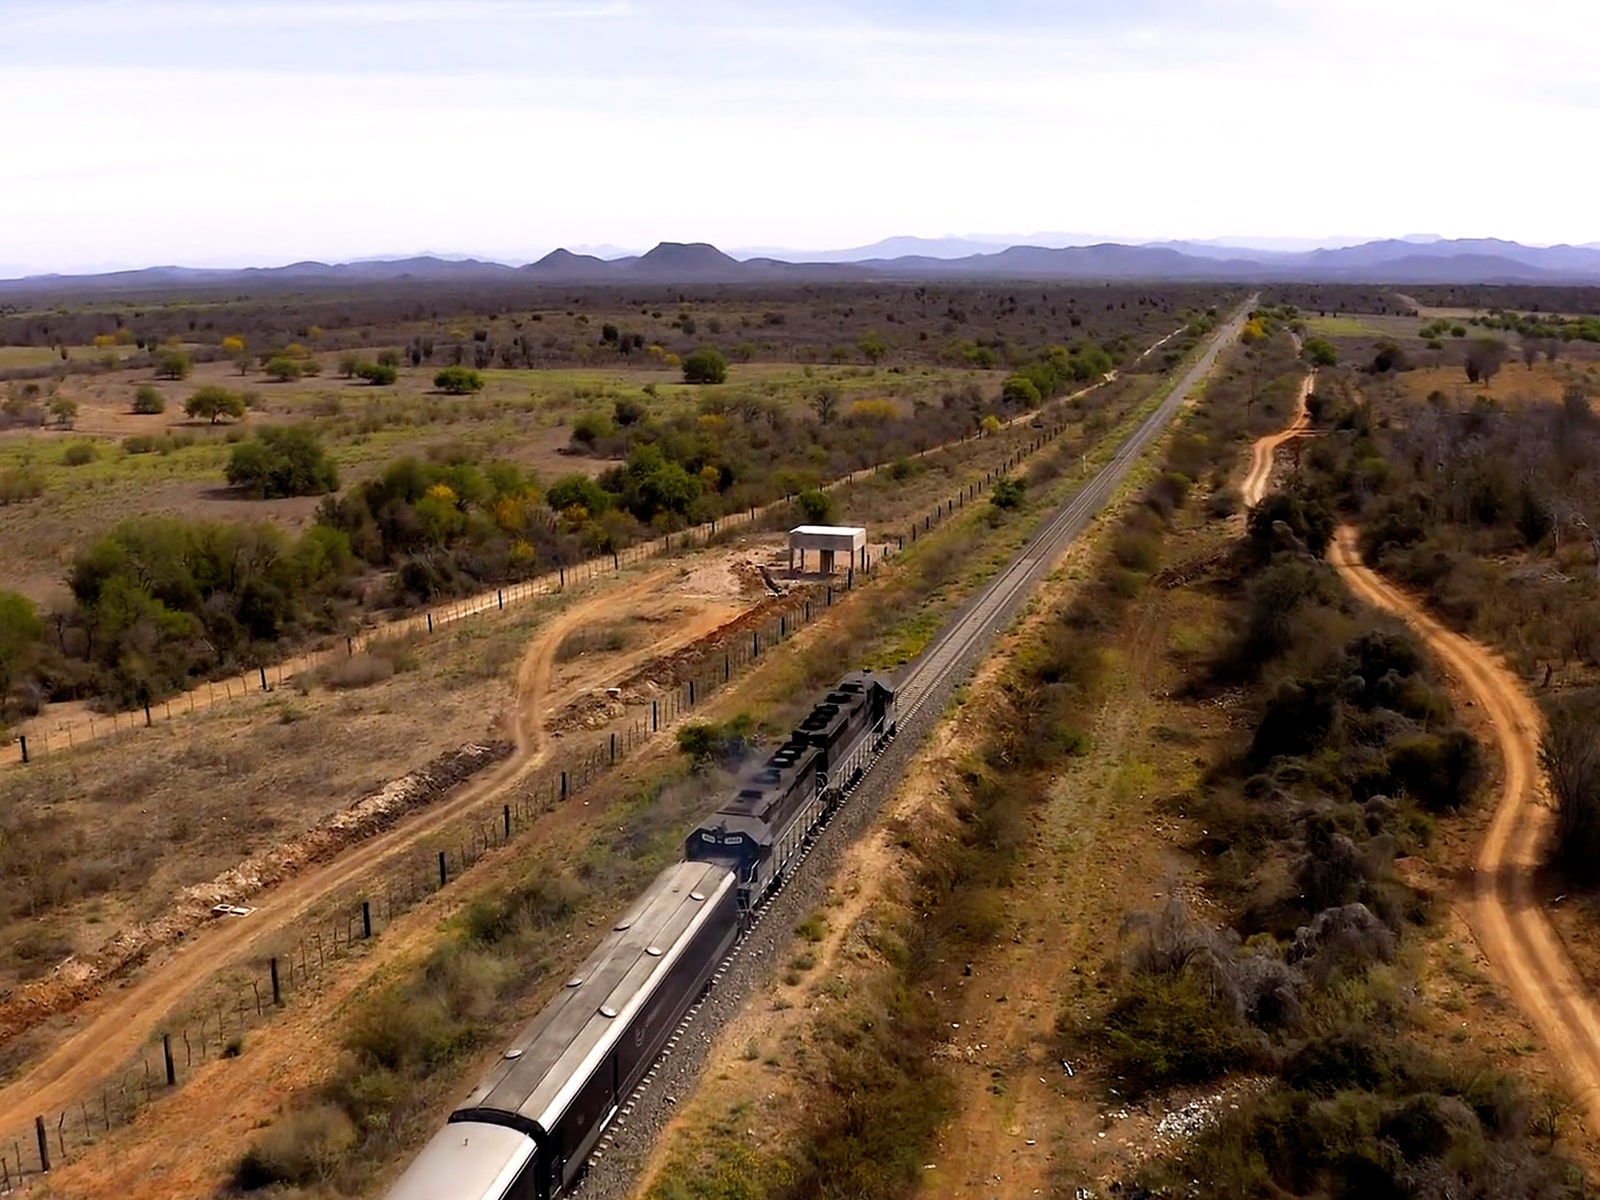 Episode 808: El Chepe, Railway to the Past